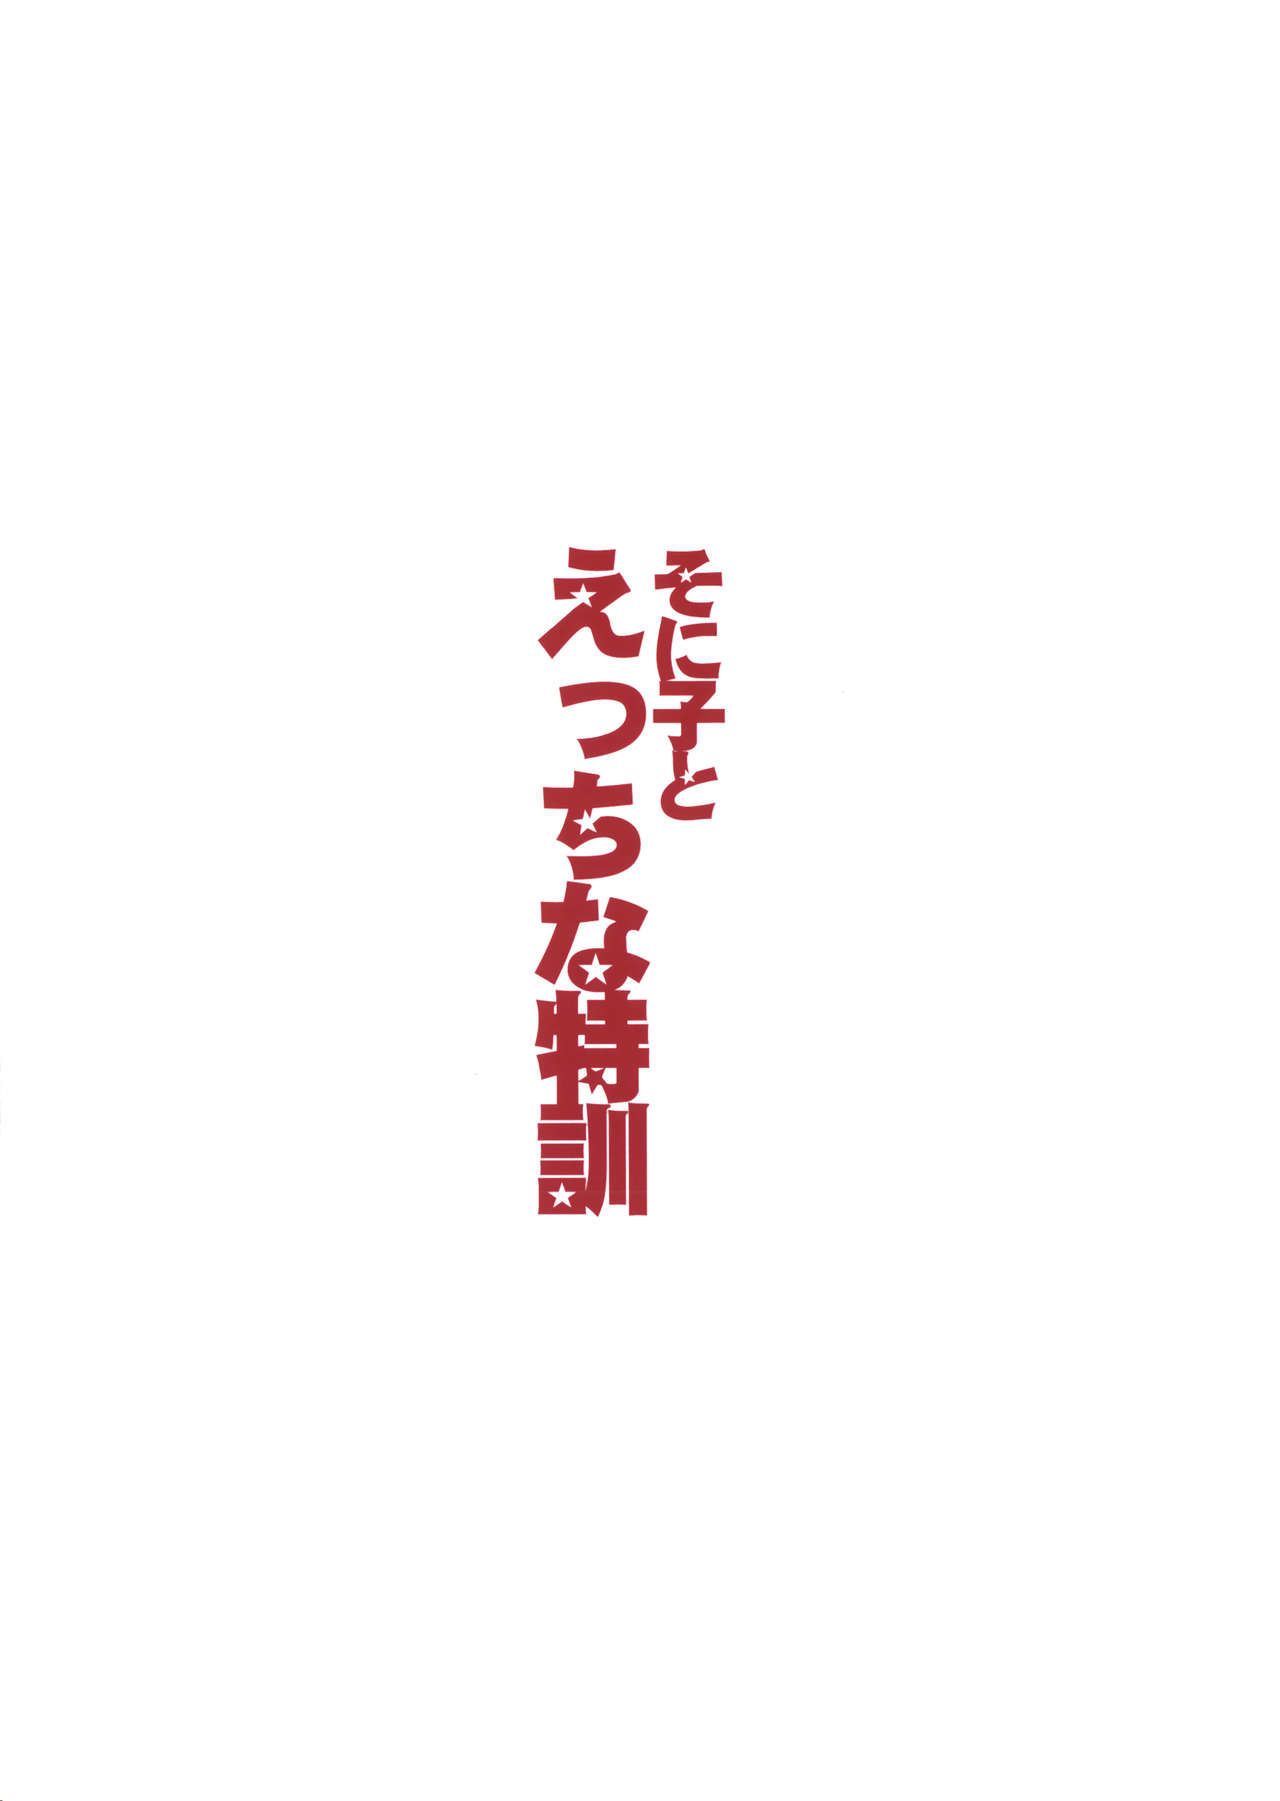 (sc63) Красный корона (ishigami kazui) Сайт sonico в Эччи на tokkun Непристойные Обучение с Сайт sonico (super sonico) biribiri